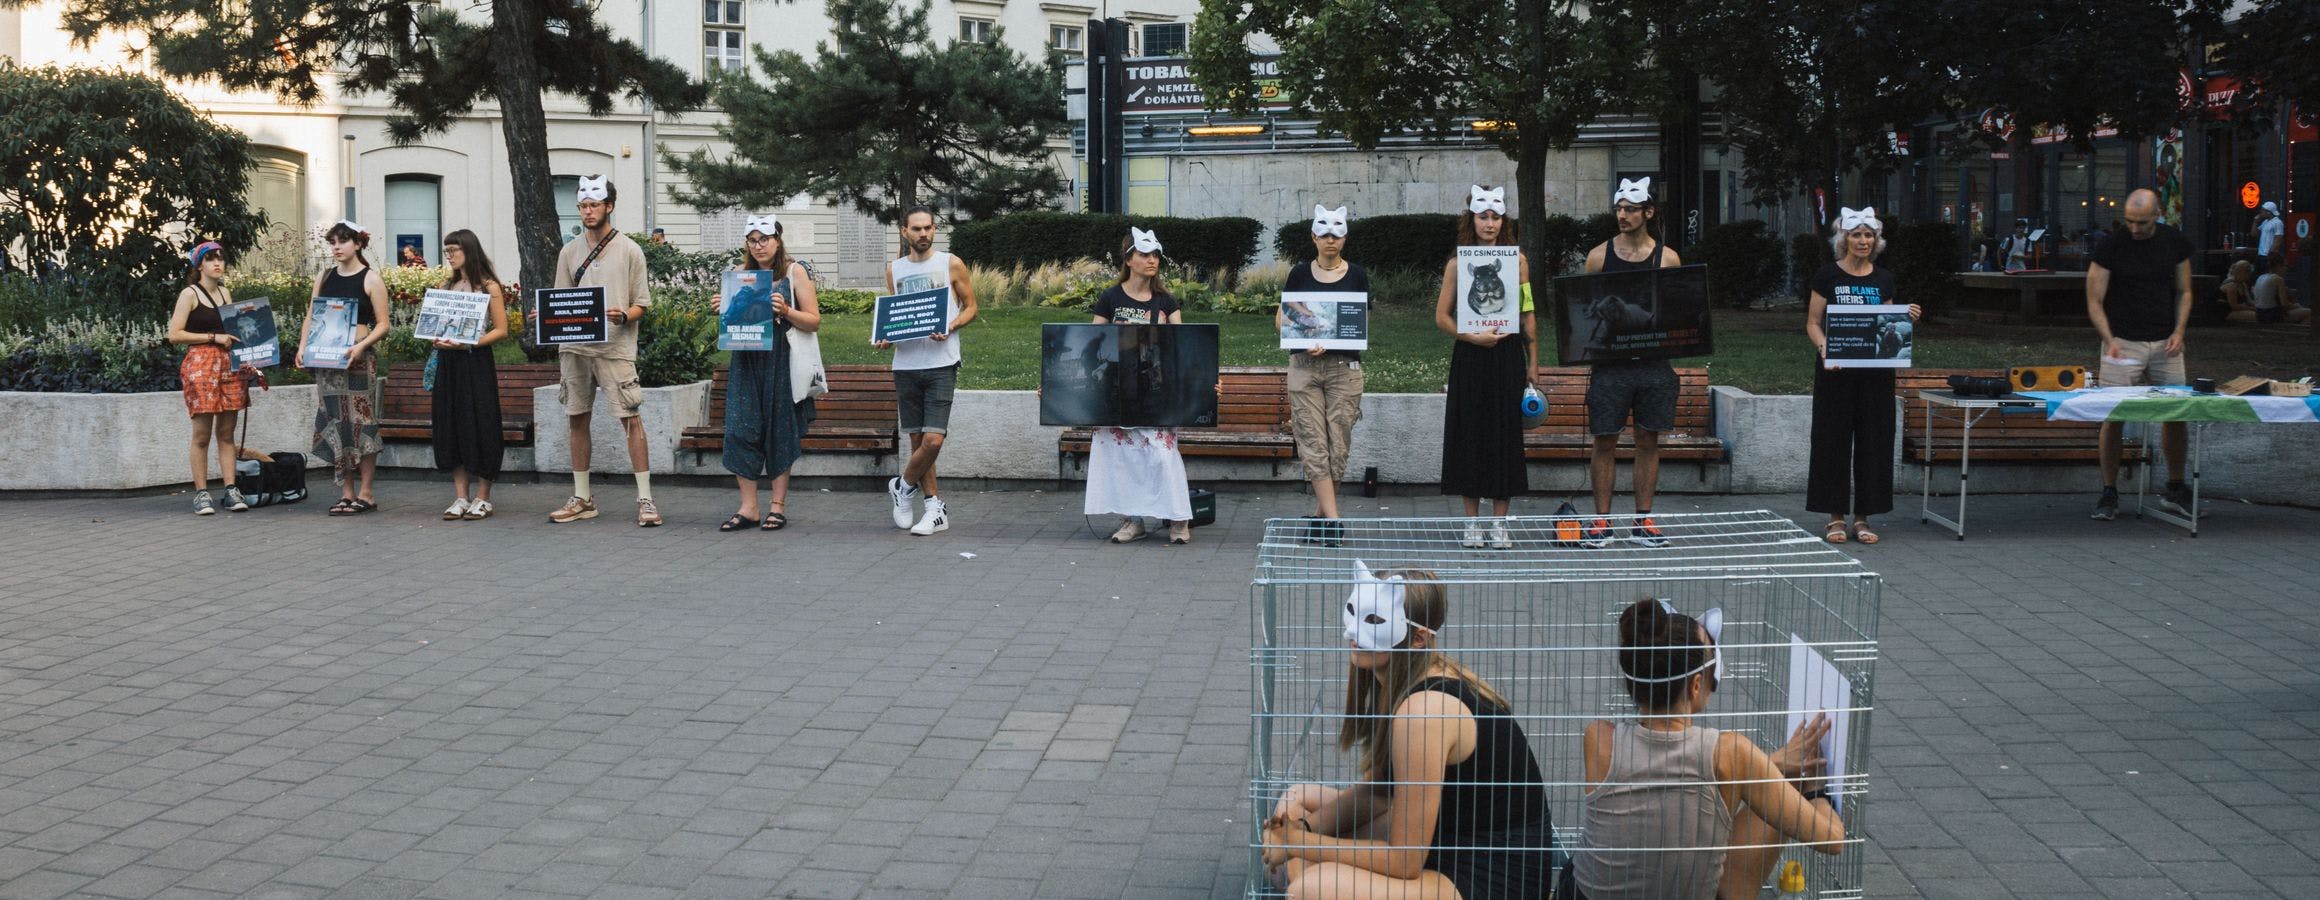 Az állatok teste nem ruházat demonstráció a Deák Ferenc téren